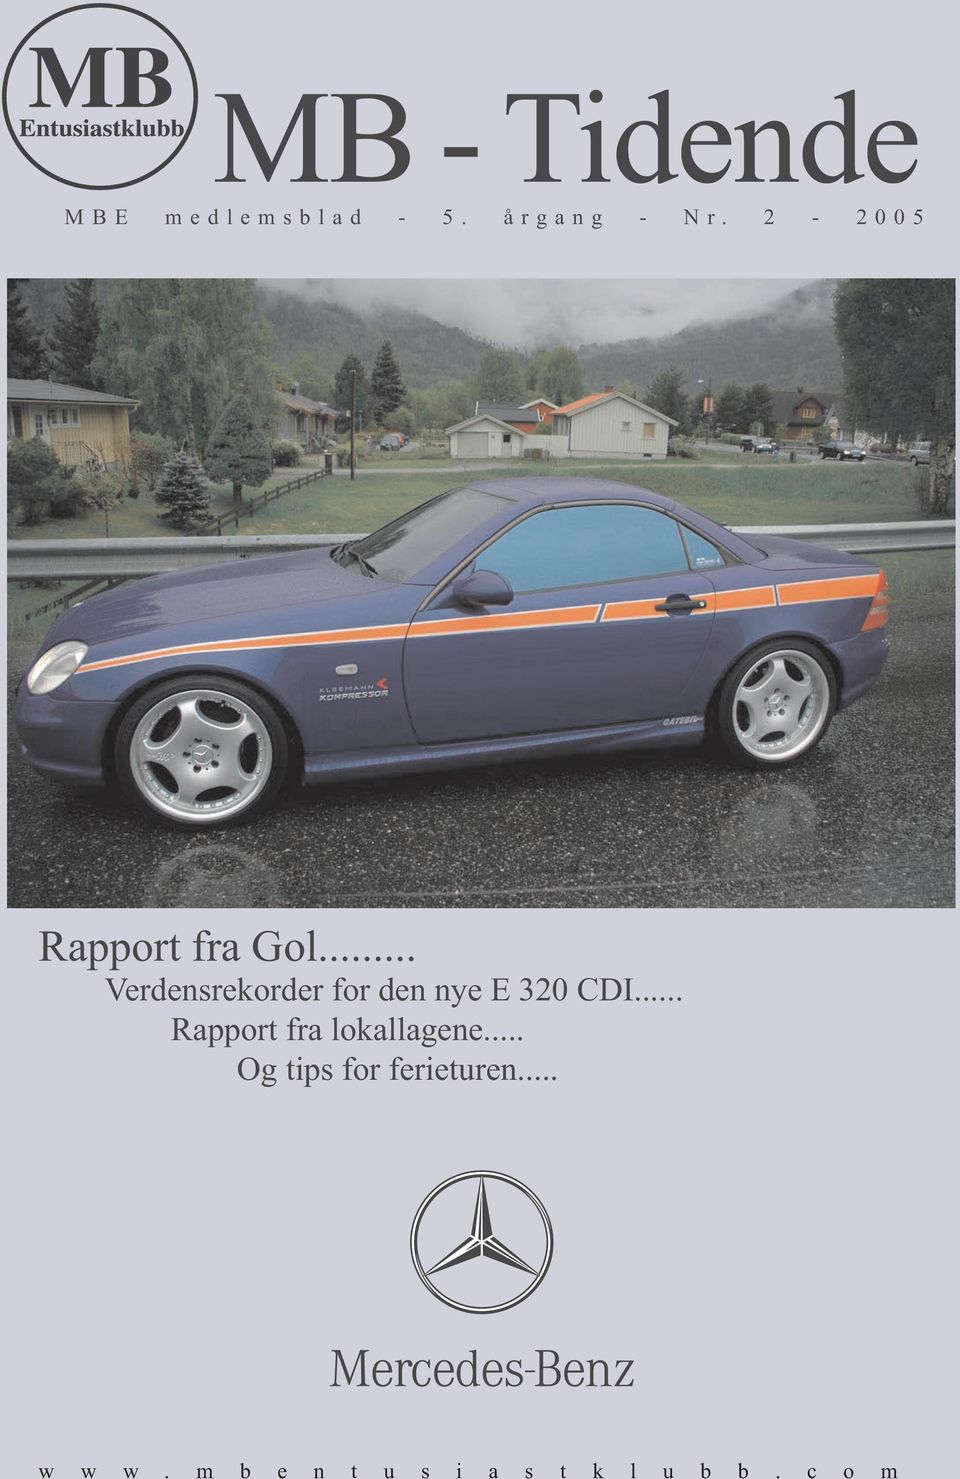 2-2005 Rapport fra Gol... Verdensrekorder for den nye E 320 CDI.